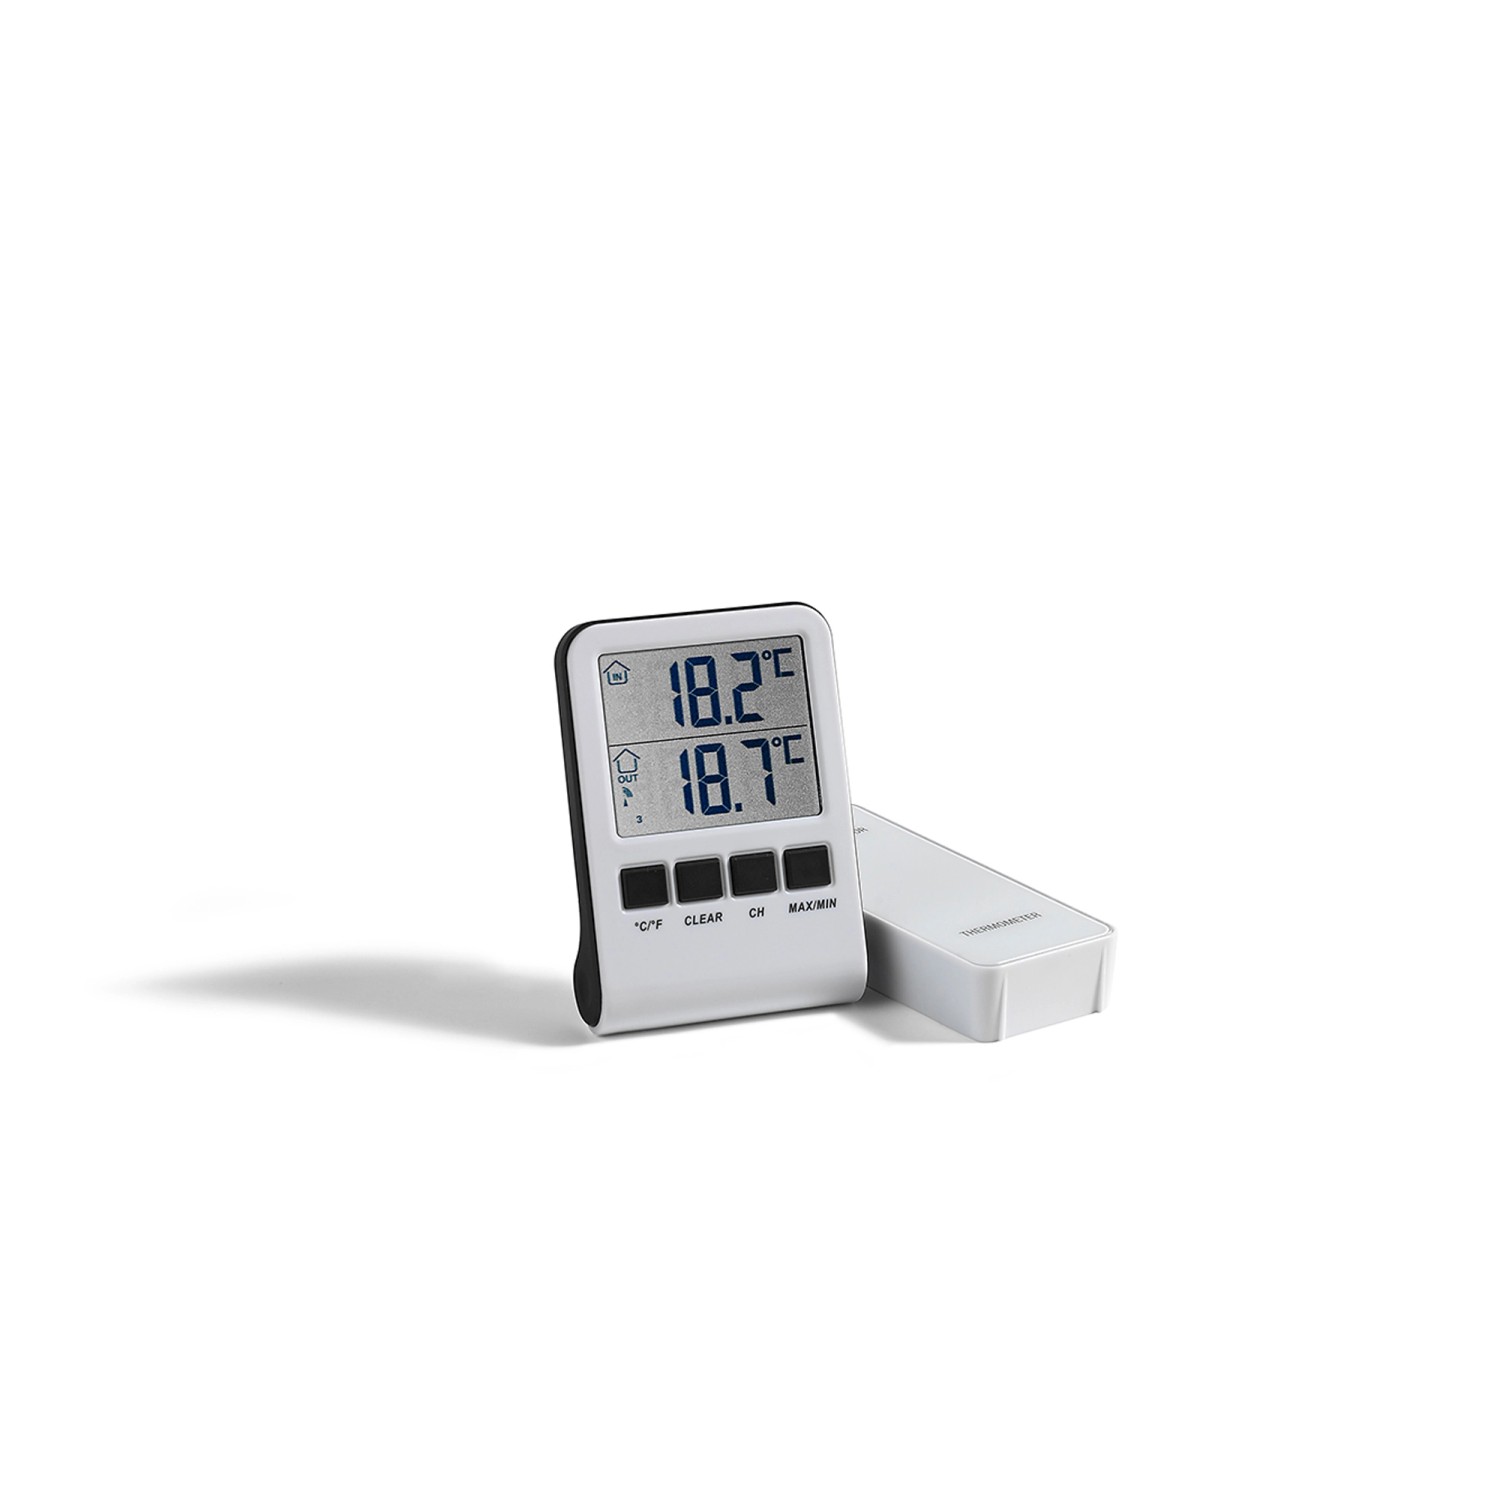 Thermometer bei OBI – Alles für Heim, Haus, Garten und Bau